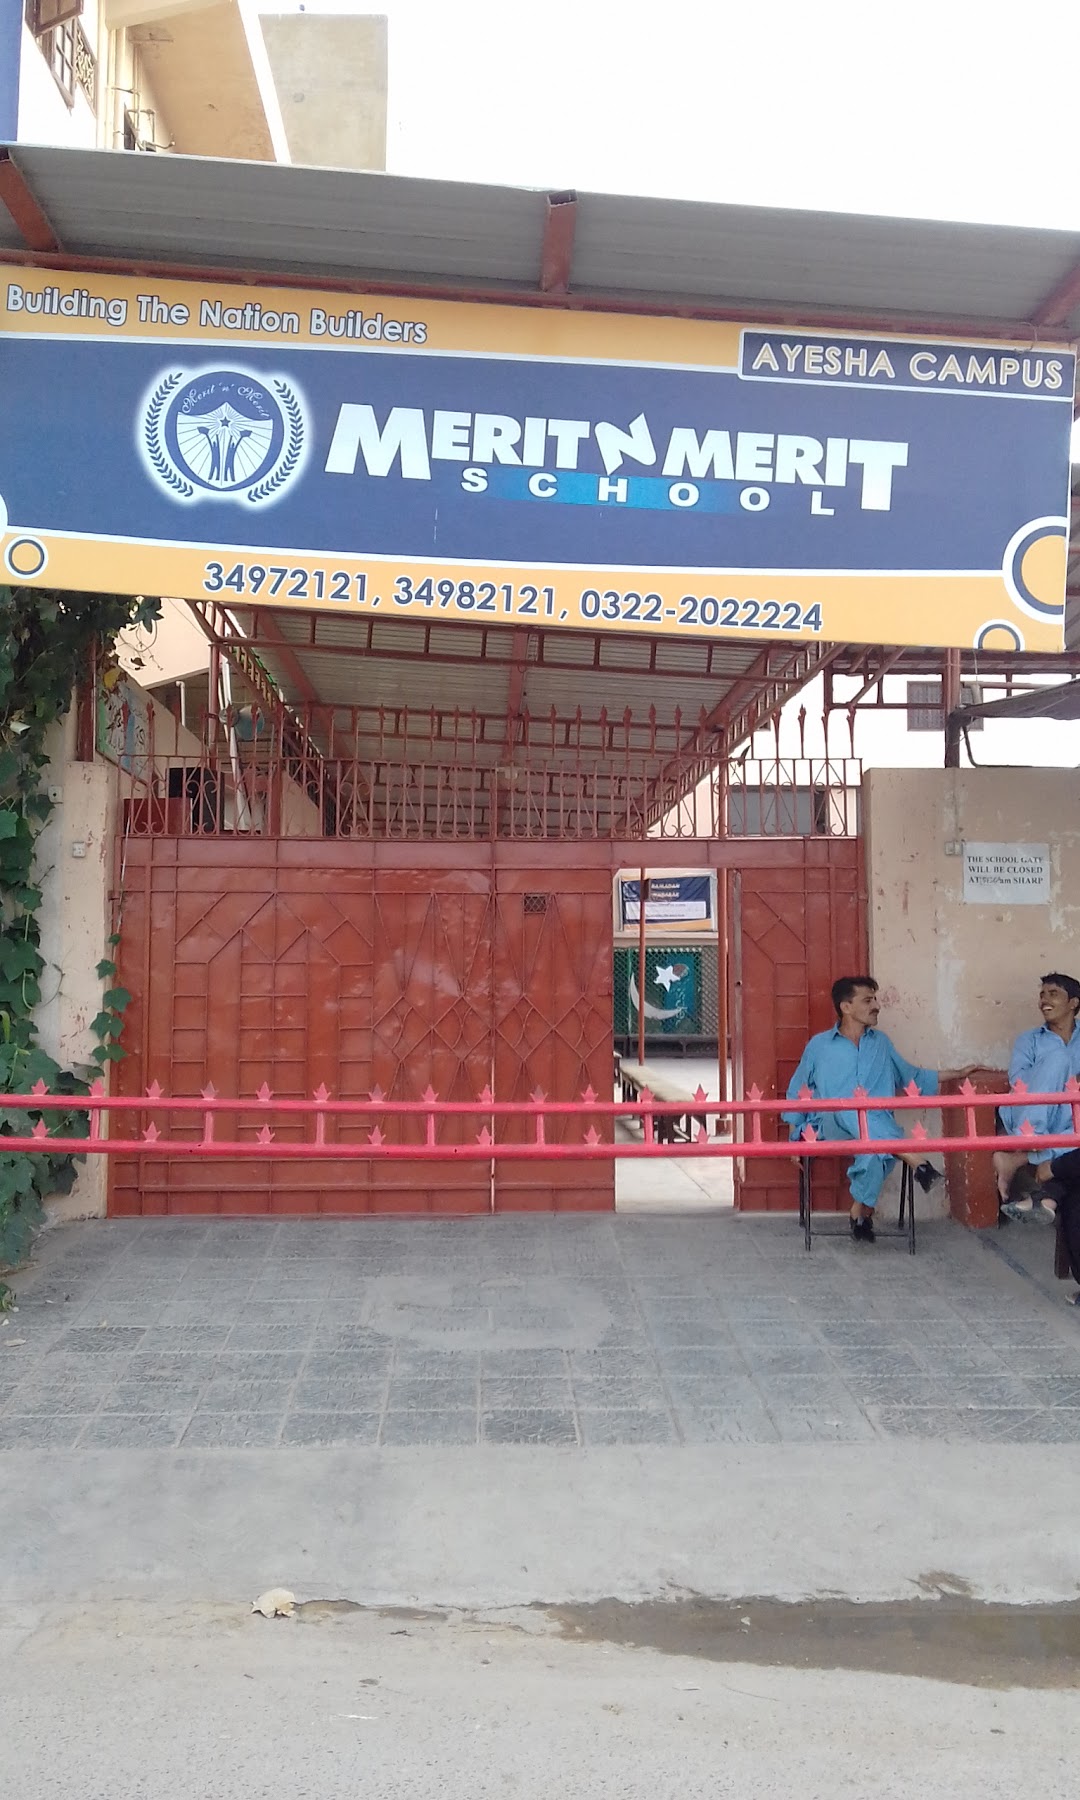 Merit n Merit School & Institute